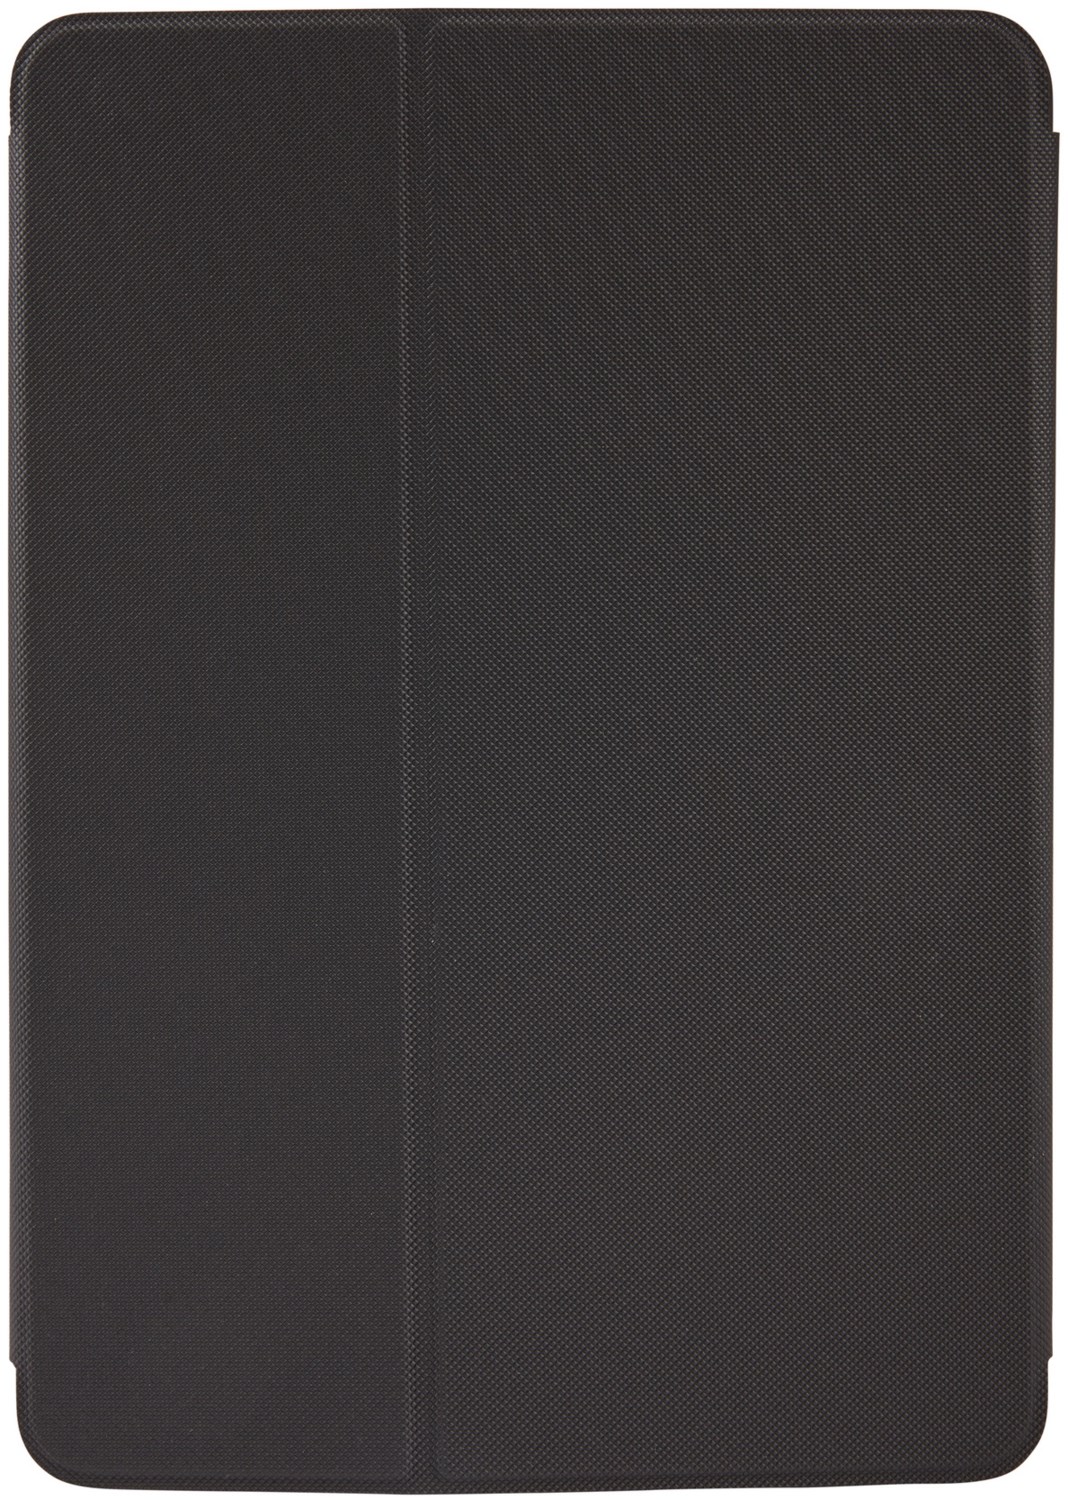 SnapView Tablet-Cover mit Stand für iPad Air schwarz